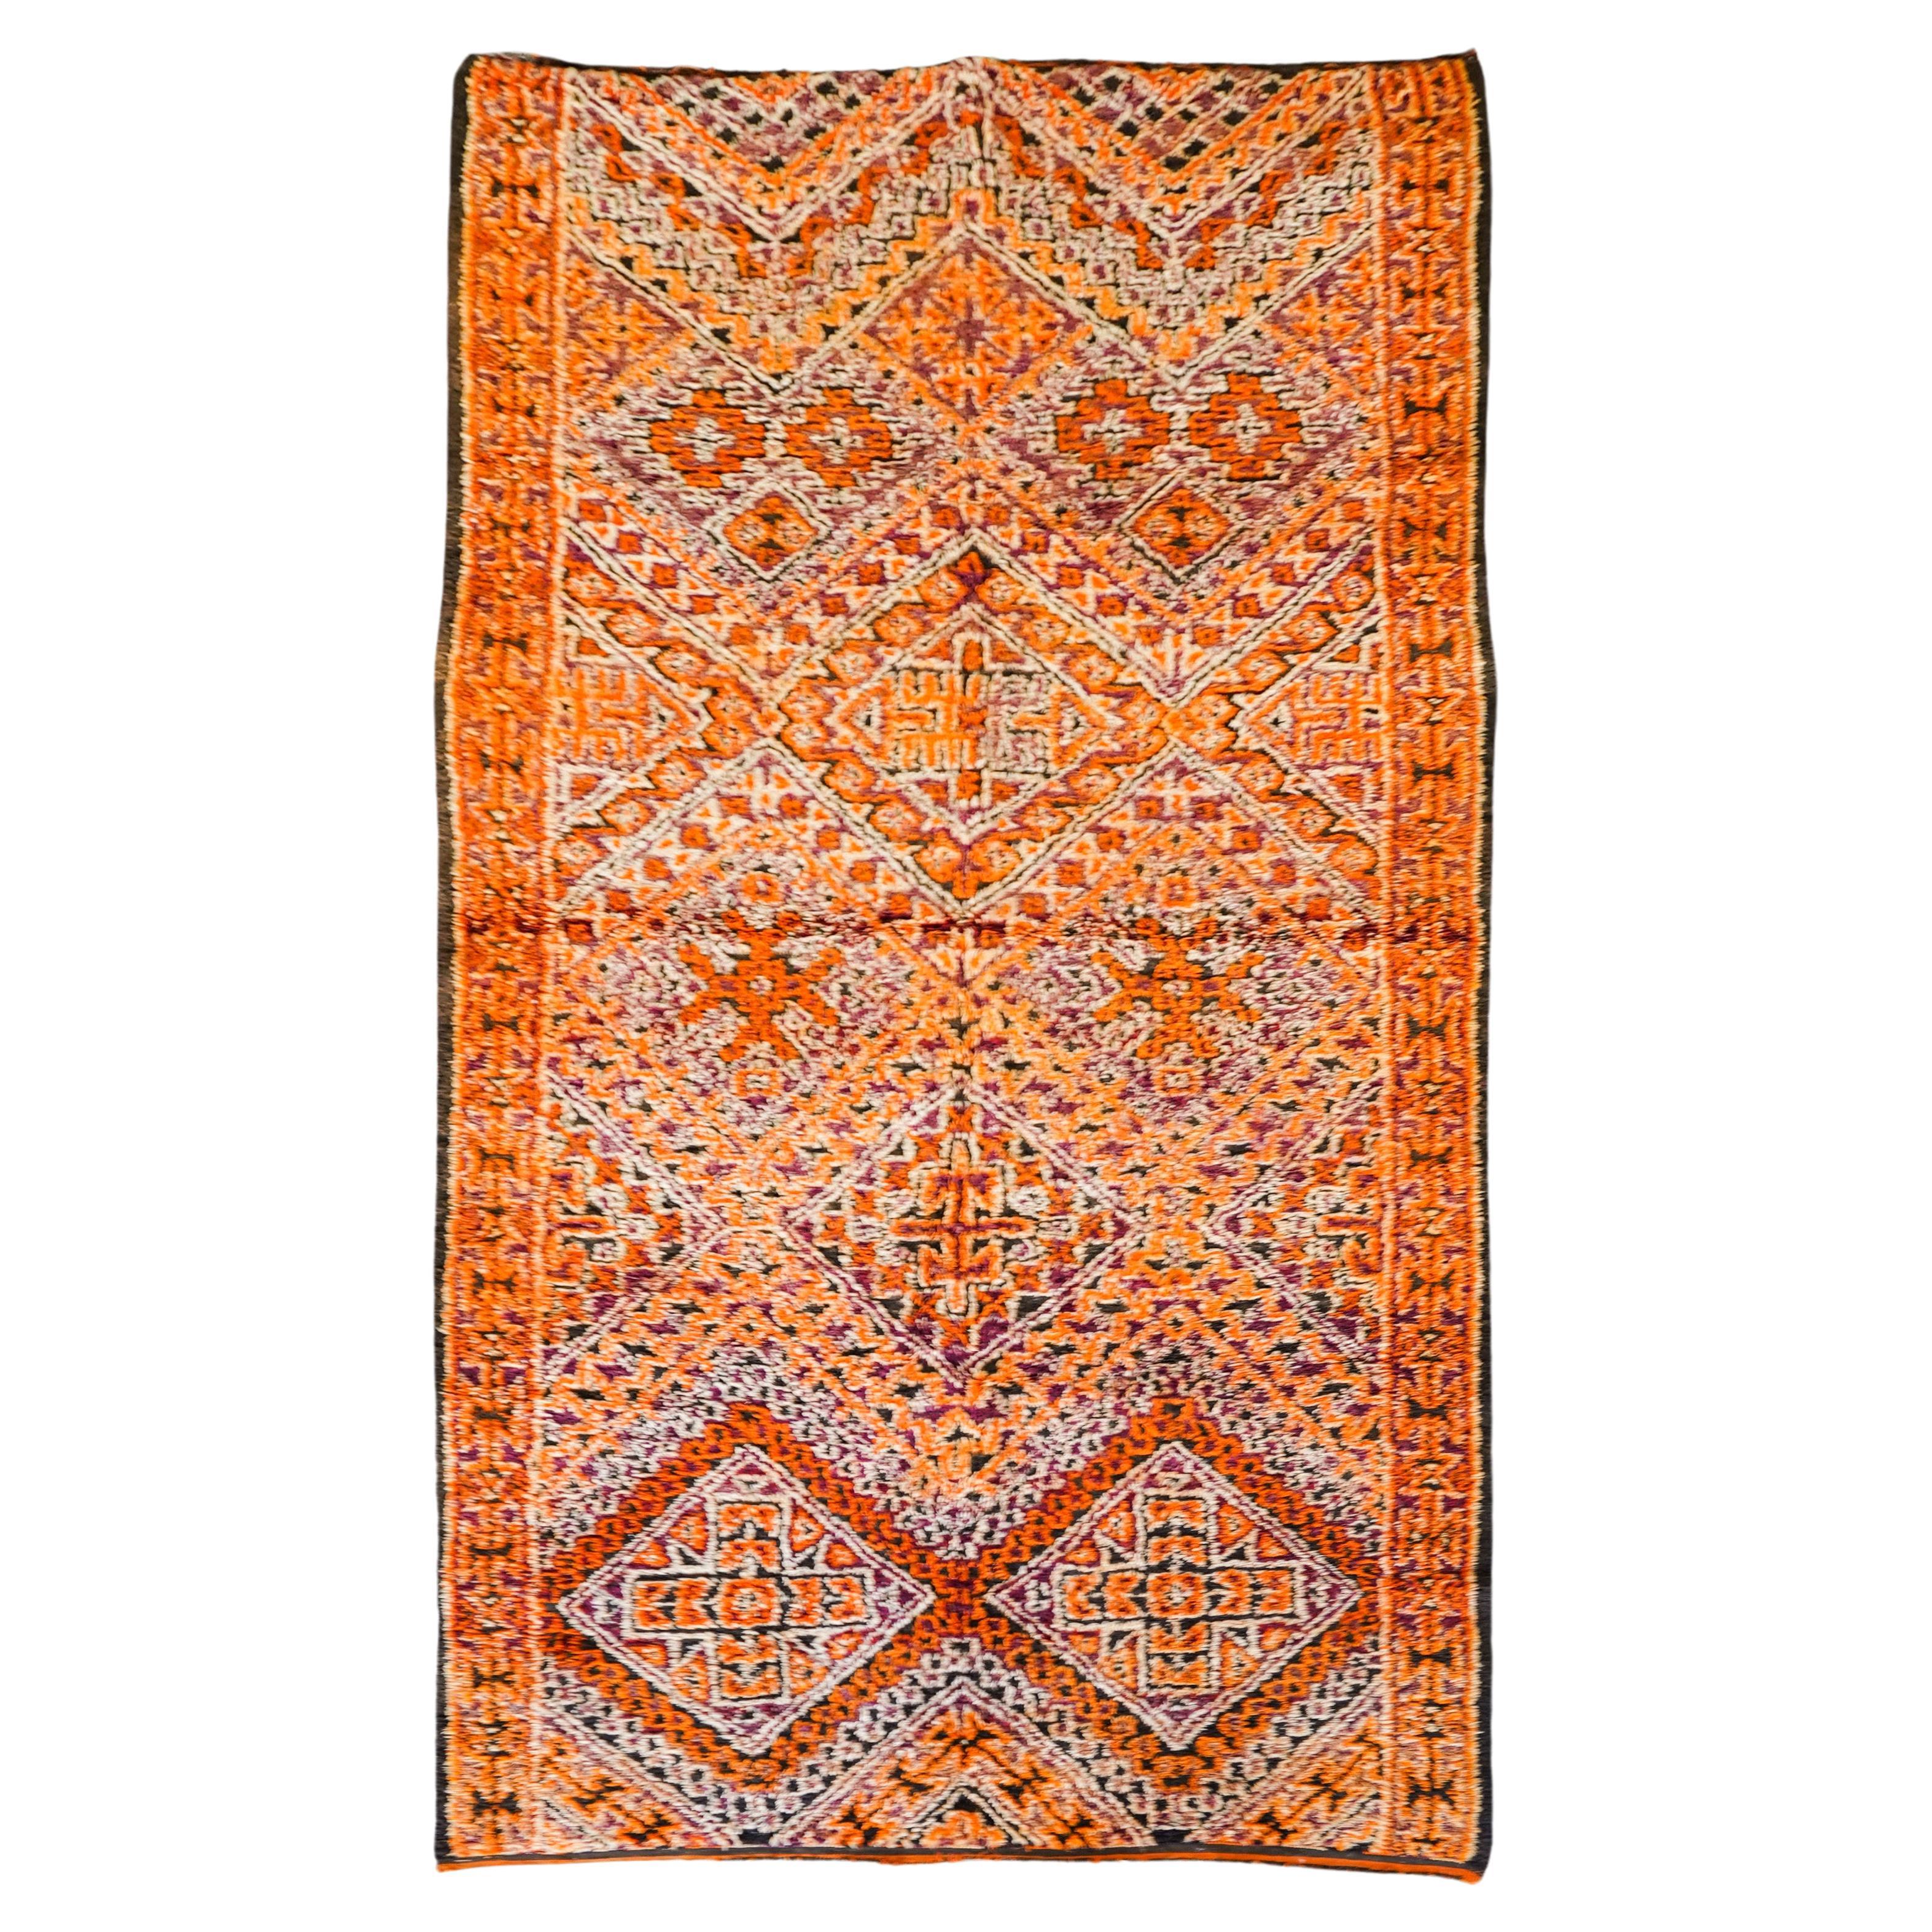 Tapis marocain orange des années 70  100% laine  5.2x11 Ft 160x330 Cm